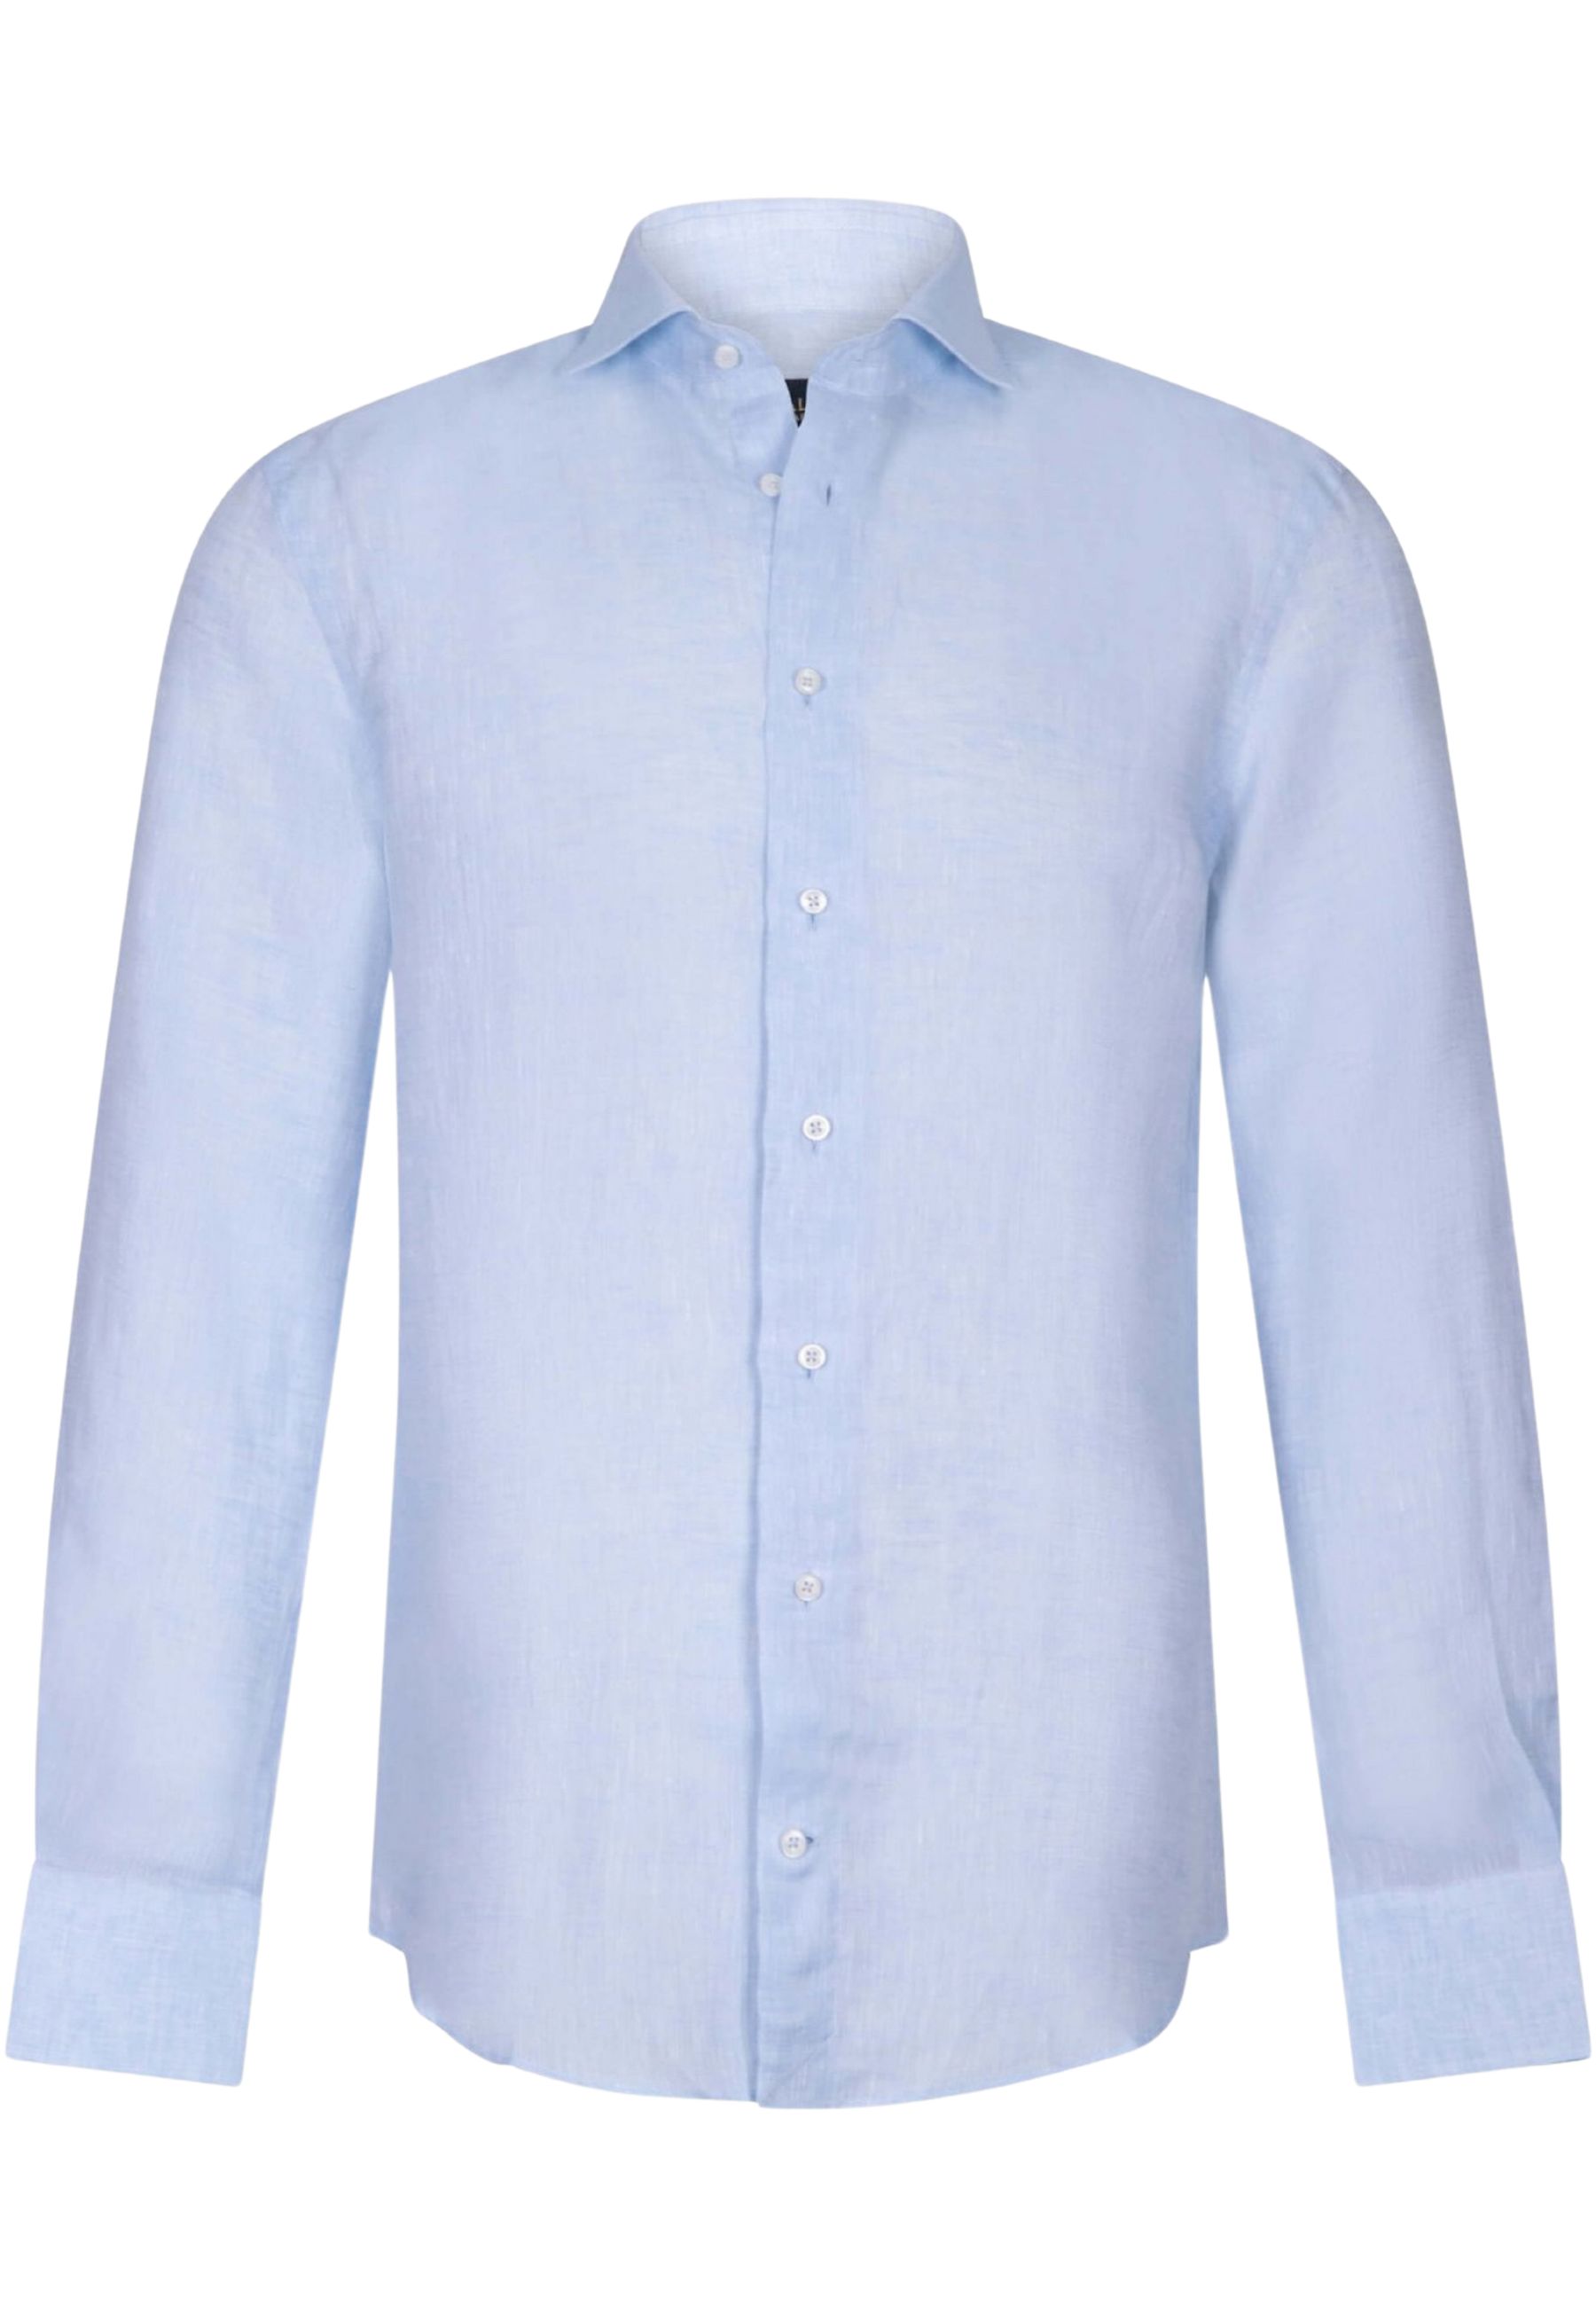 Overhemd Lichtblauw Firento lange mouw overhemden lichtblauw